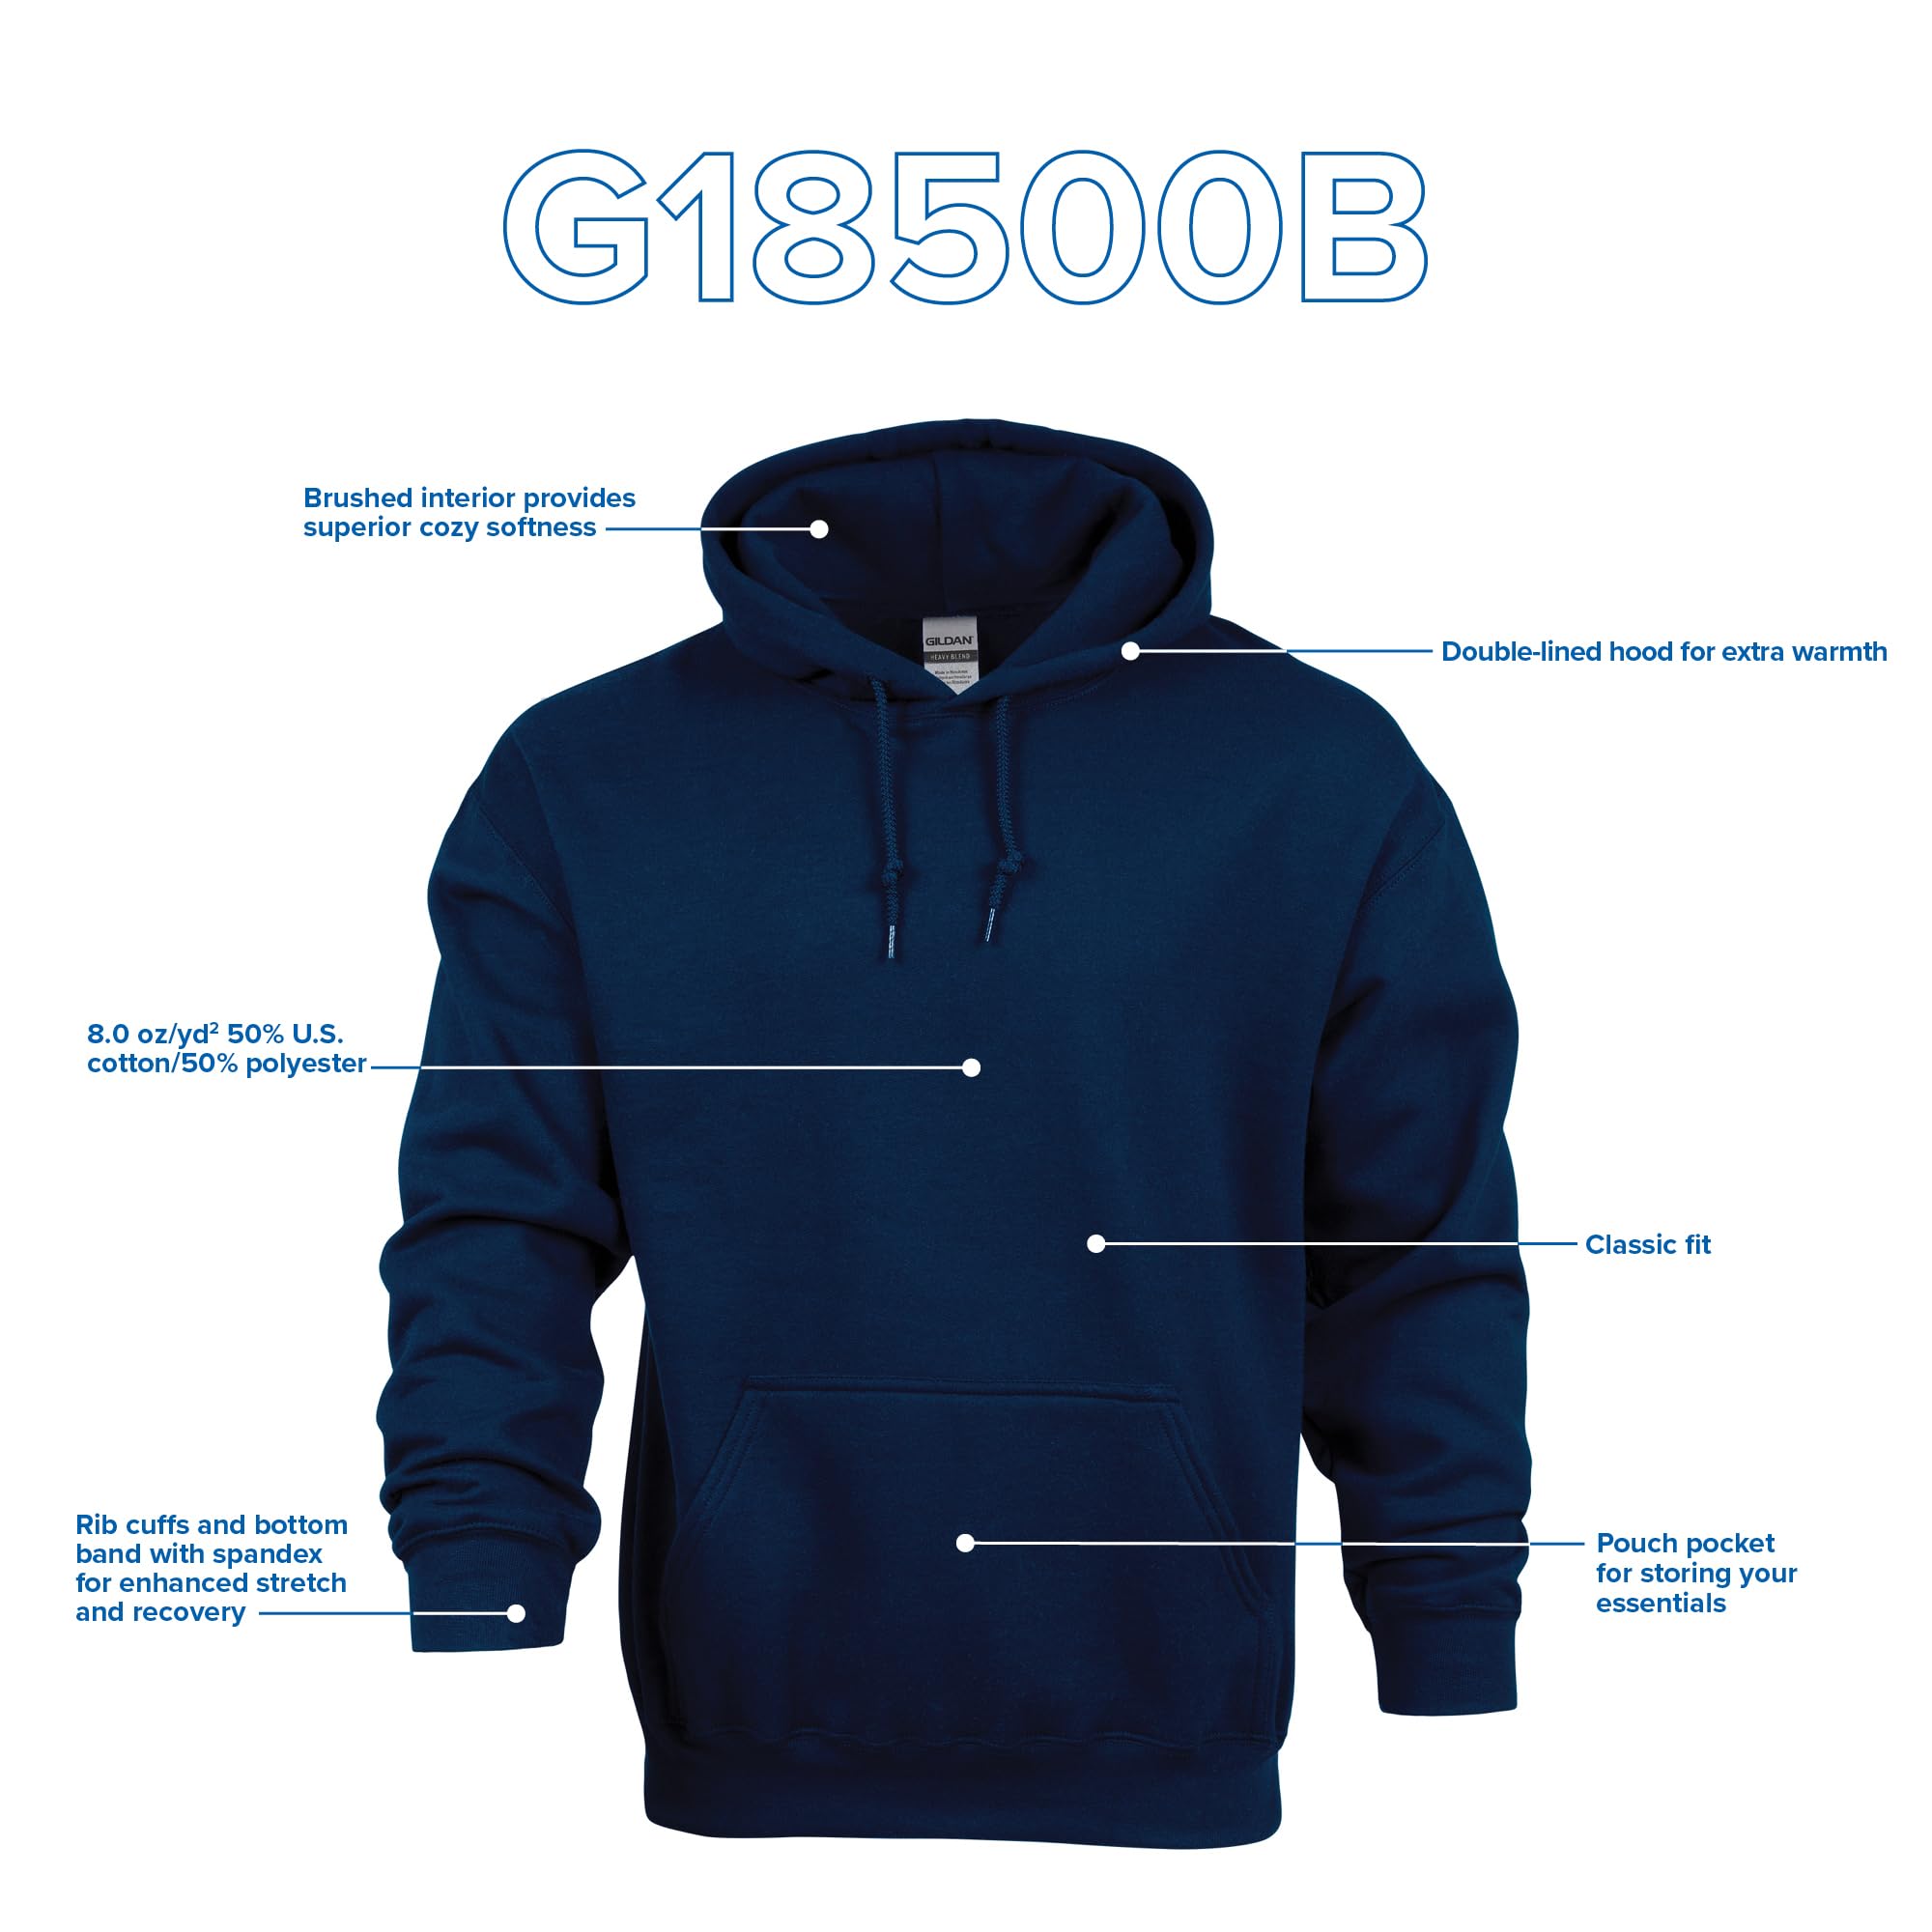 Gildan Kids' Hoodie Sweatshirt, Style G18500b